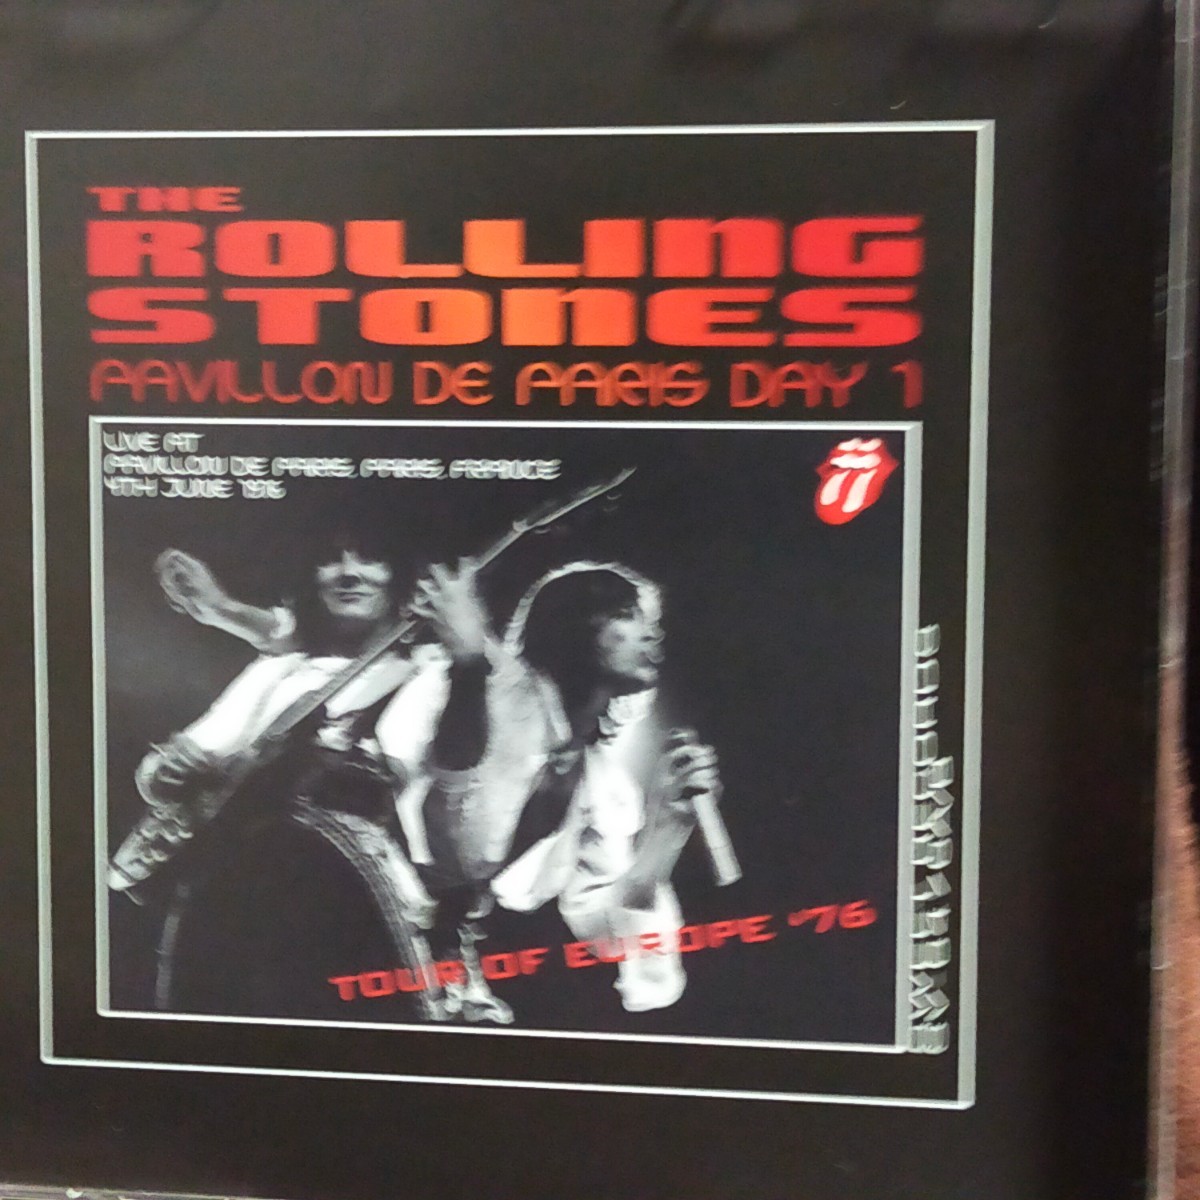 [2CD] the rolling stones/pavilion de paris day 1_画像6